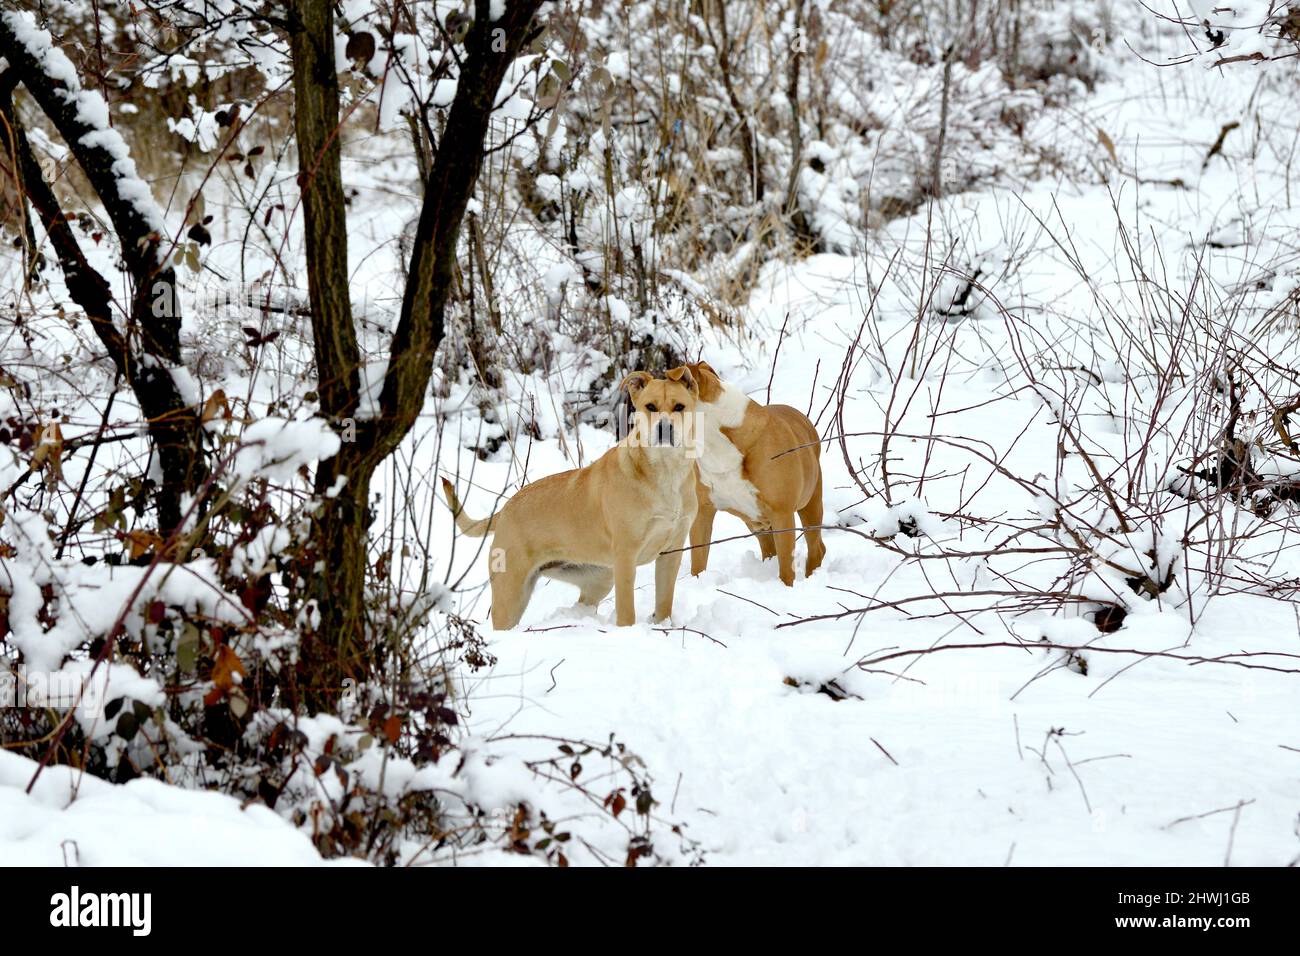 i cani amstaff sono fantastici nella foresta invernale. Stile di vita attivo, escursioni e trekking con animali domestici in stagione fredda, portando cani in lunghe passeggiate. Foto Stock